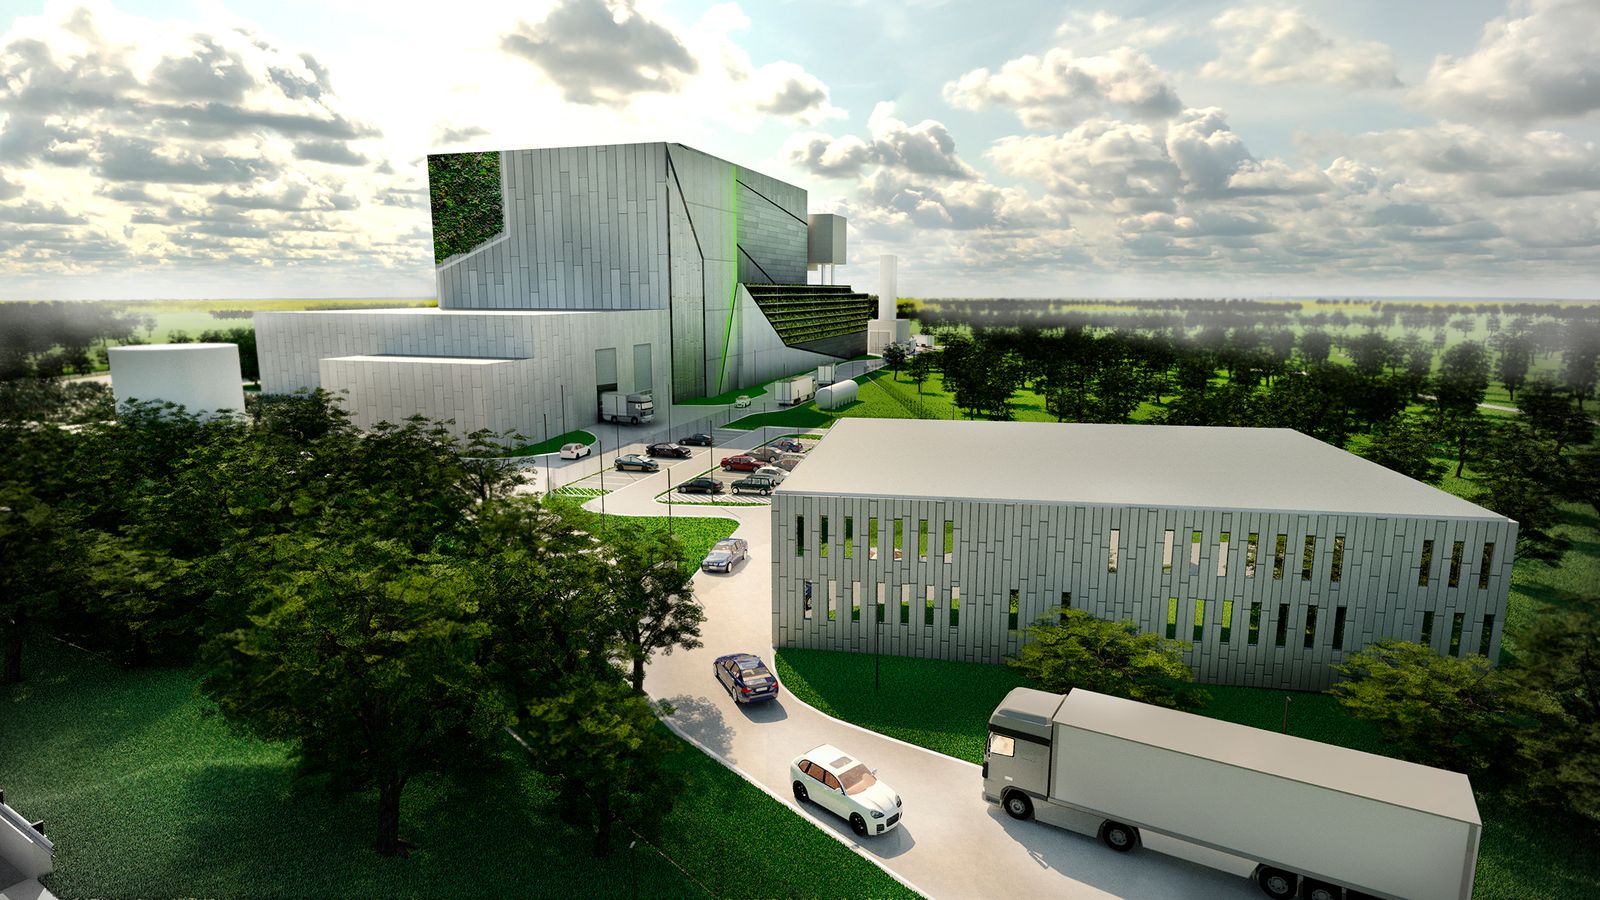 W Lublinie planują budowę spalarni odpadów. Kuszą tańszą energią dla mieszkańców (wizualizacje)